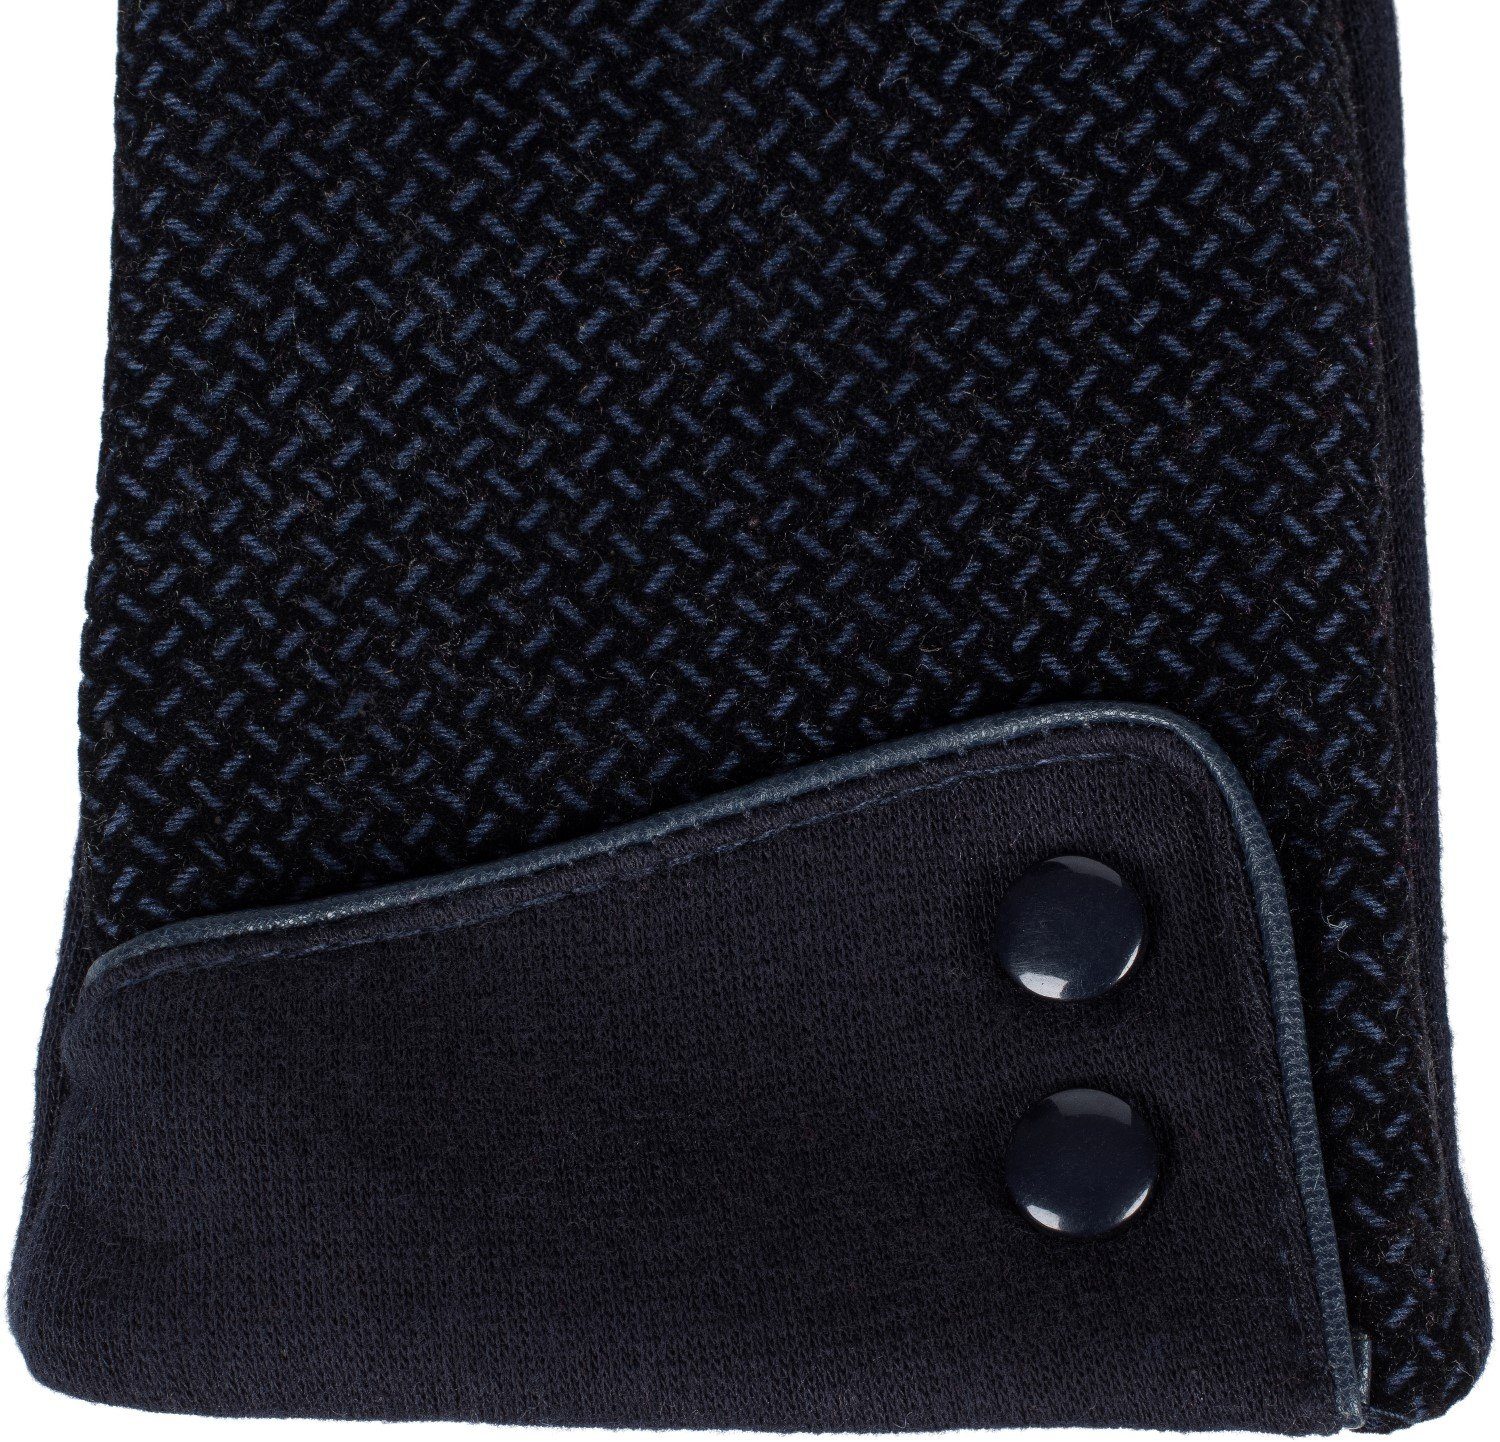 Dunkelblau Riffel Baumwollhandschuhe Touchscreen weichem Handschuhe mit styleBREAKER Muster